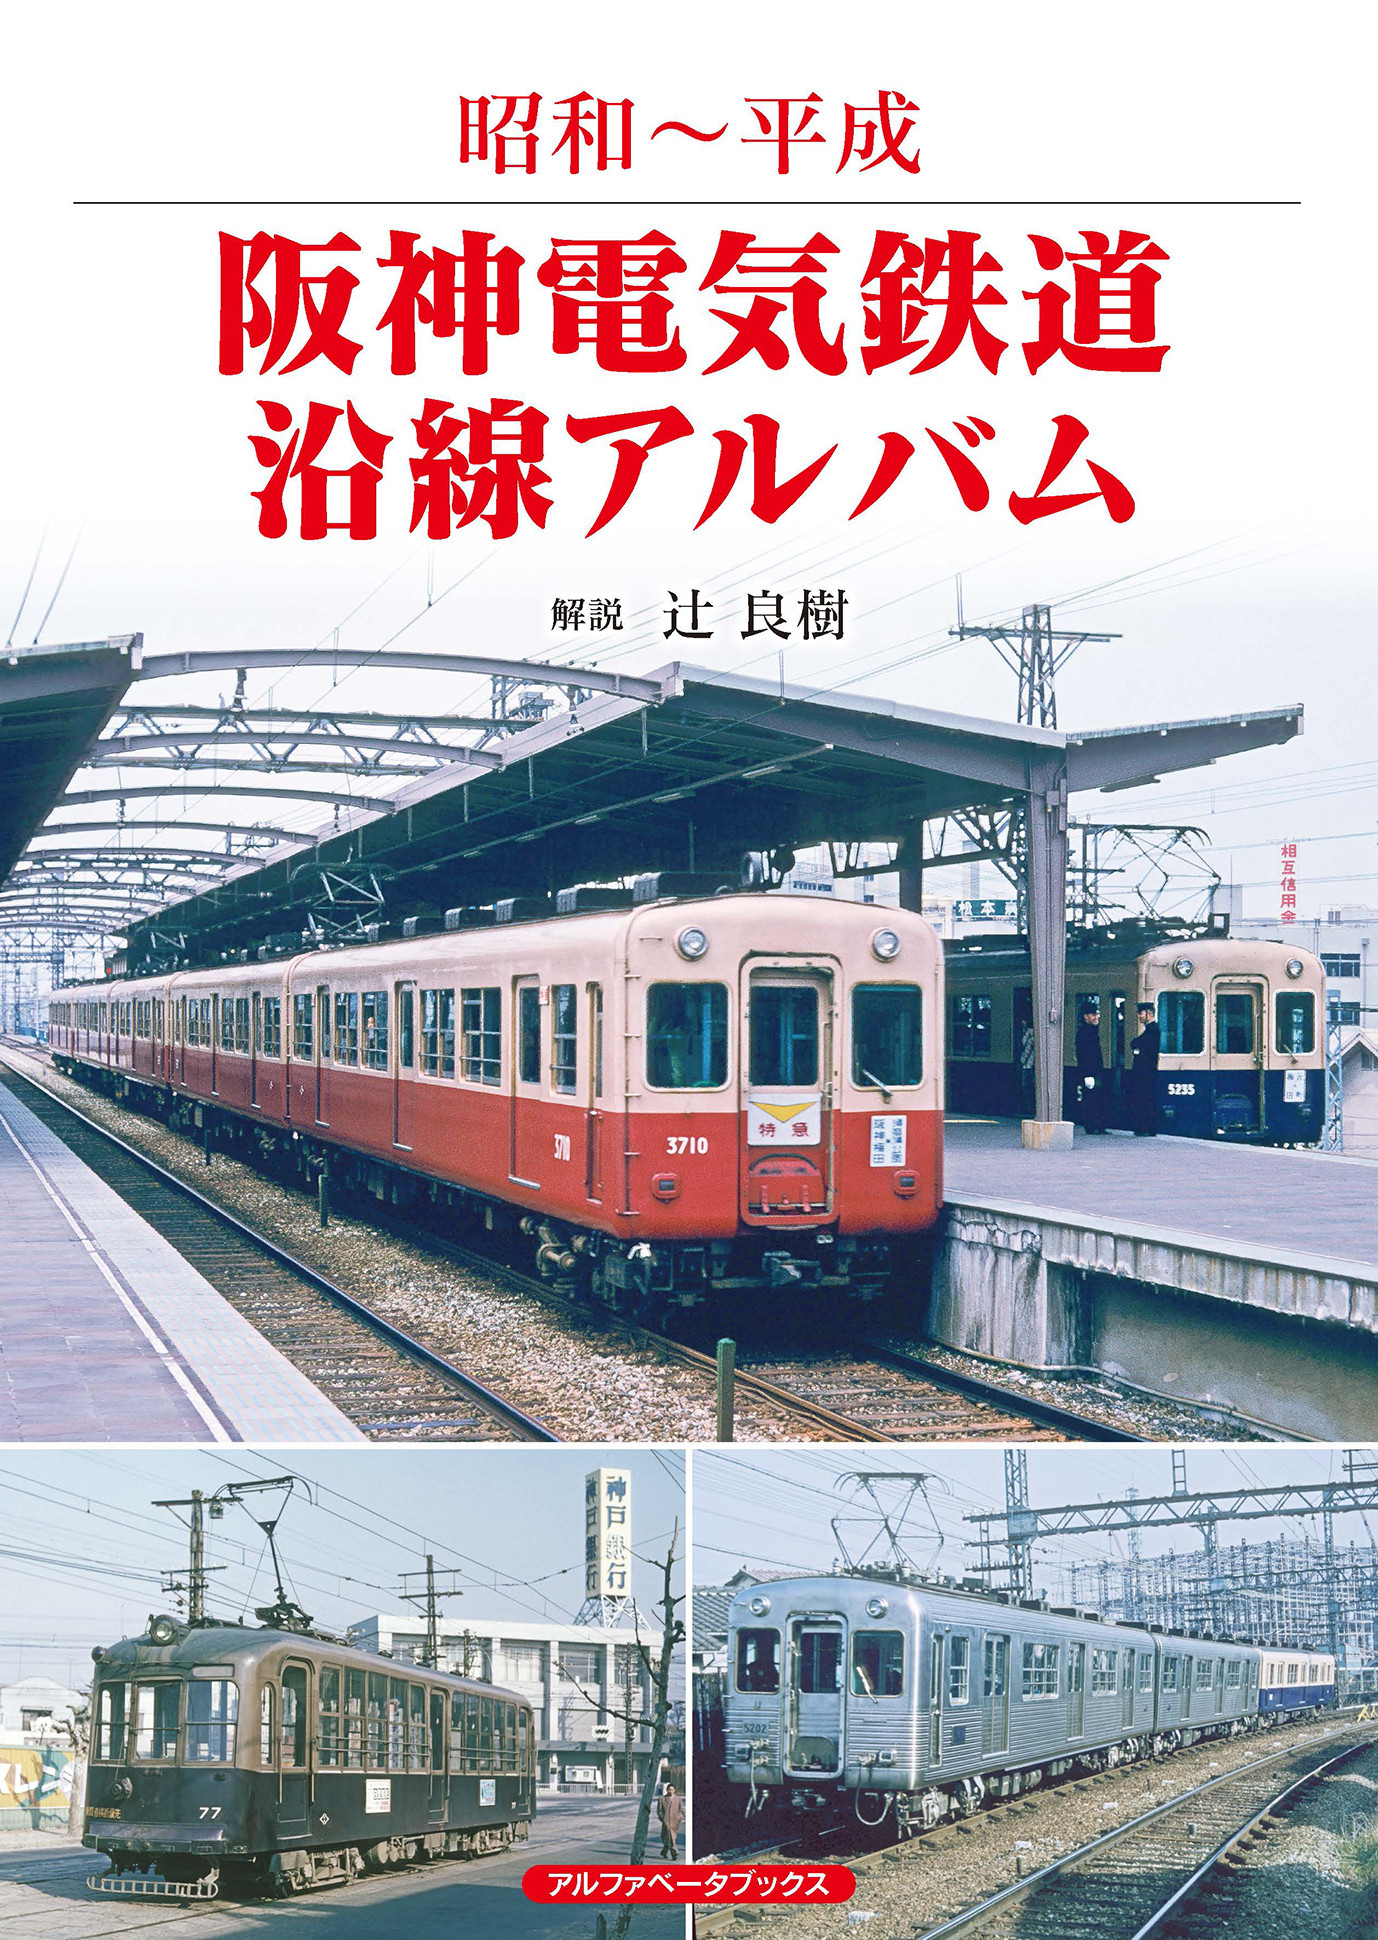 阪神電気鉄道沿線アルバムの商品画像